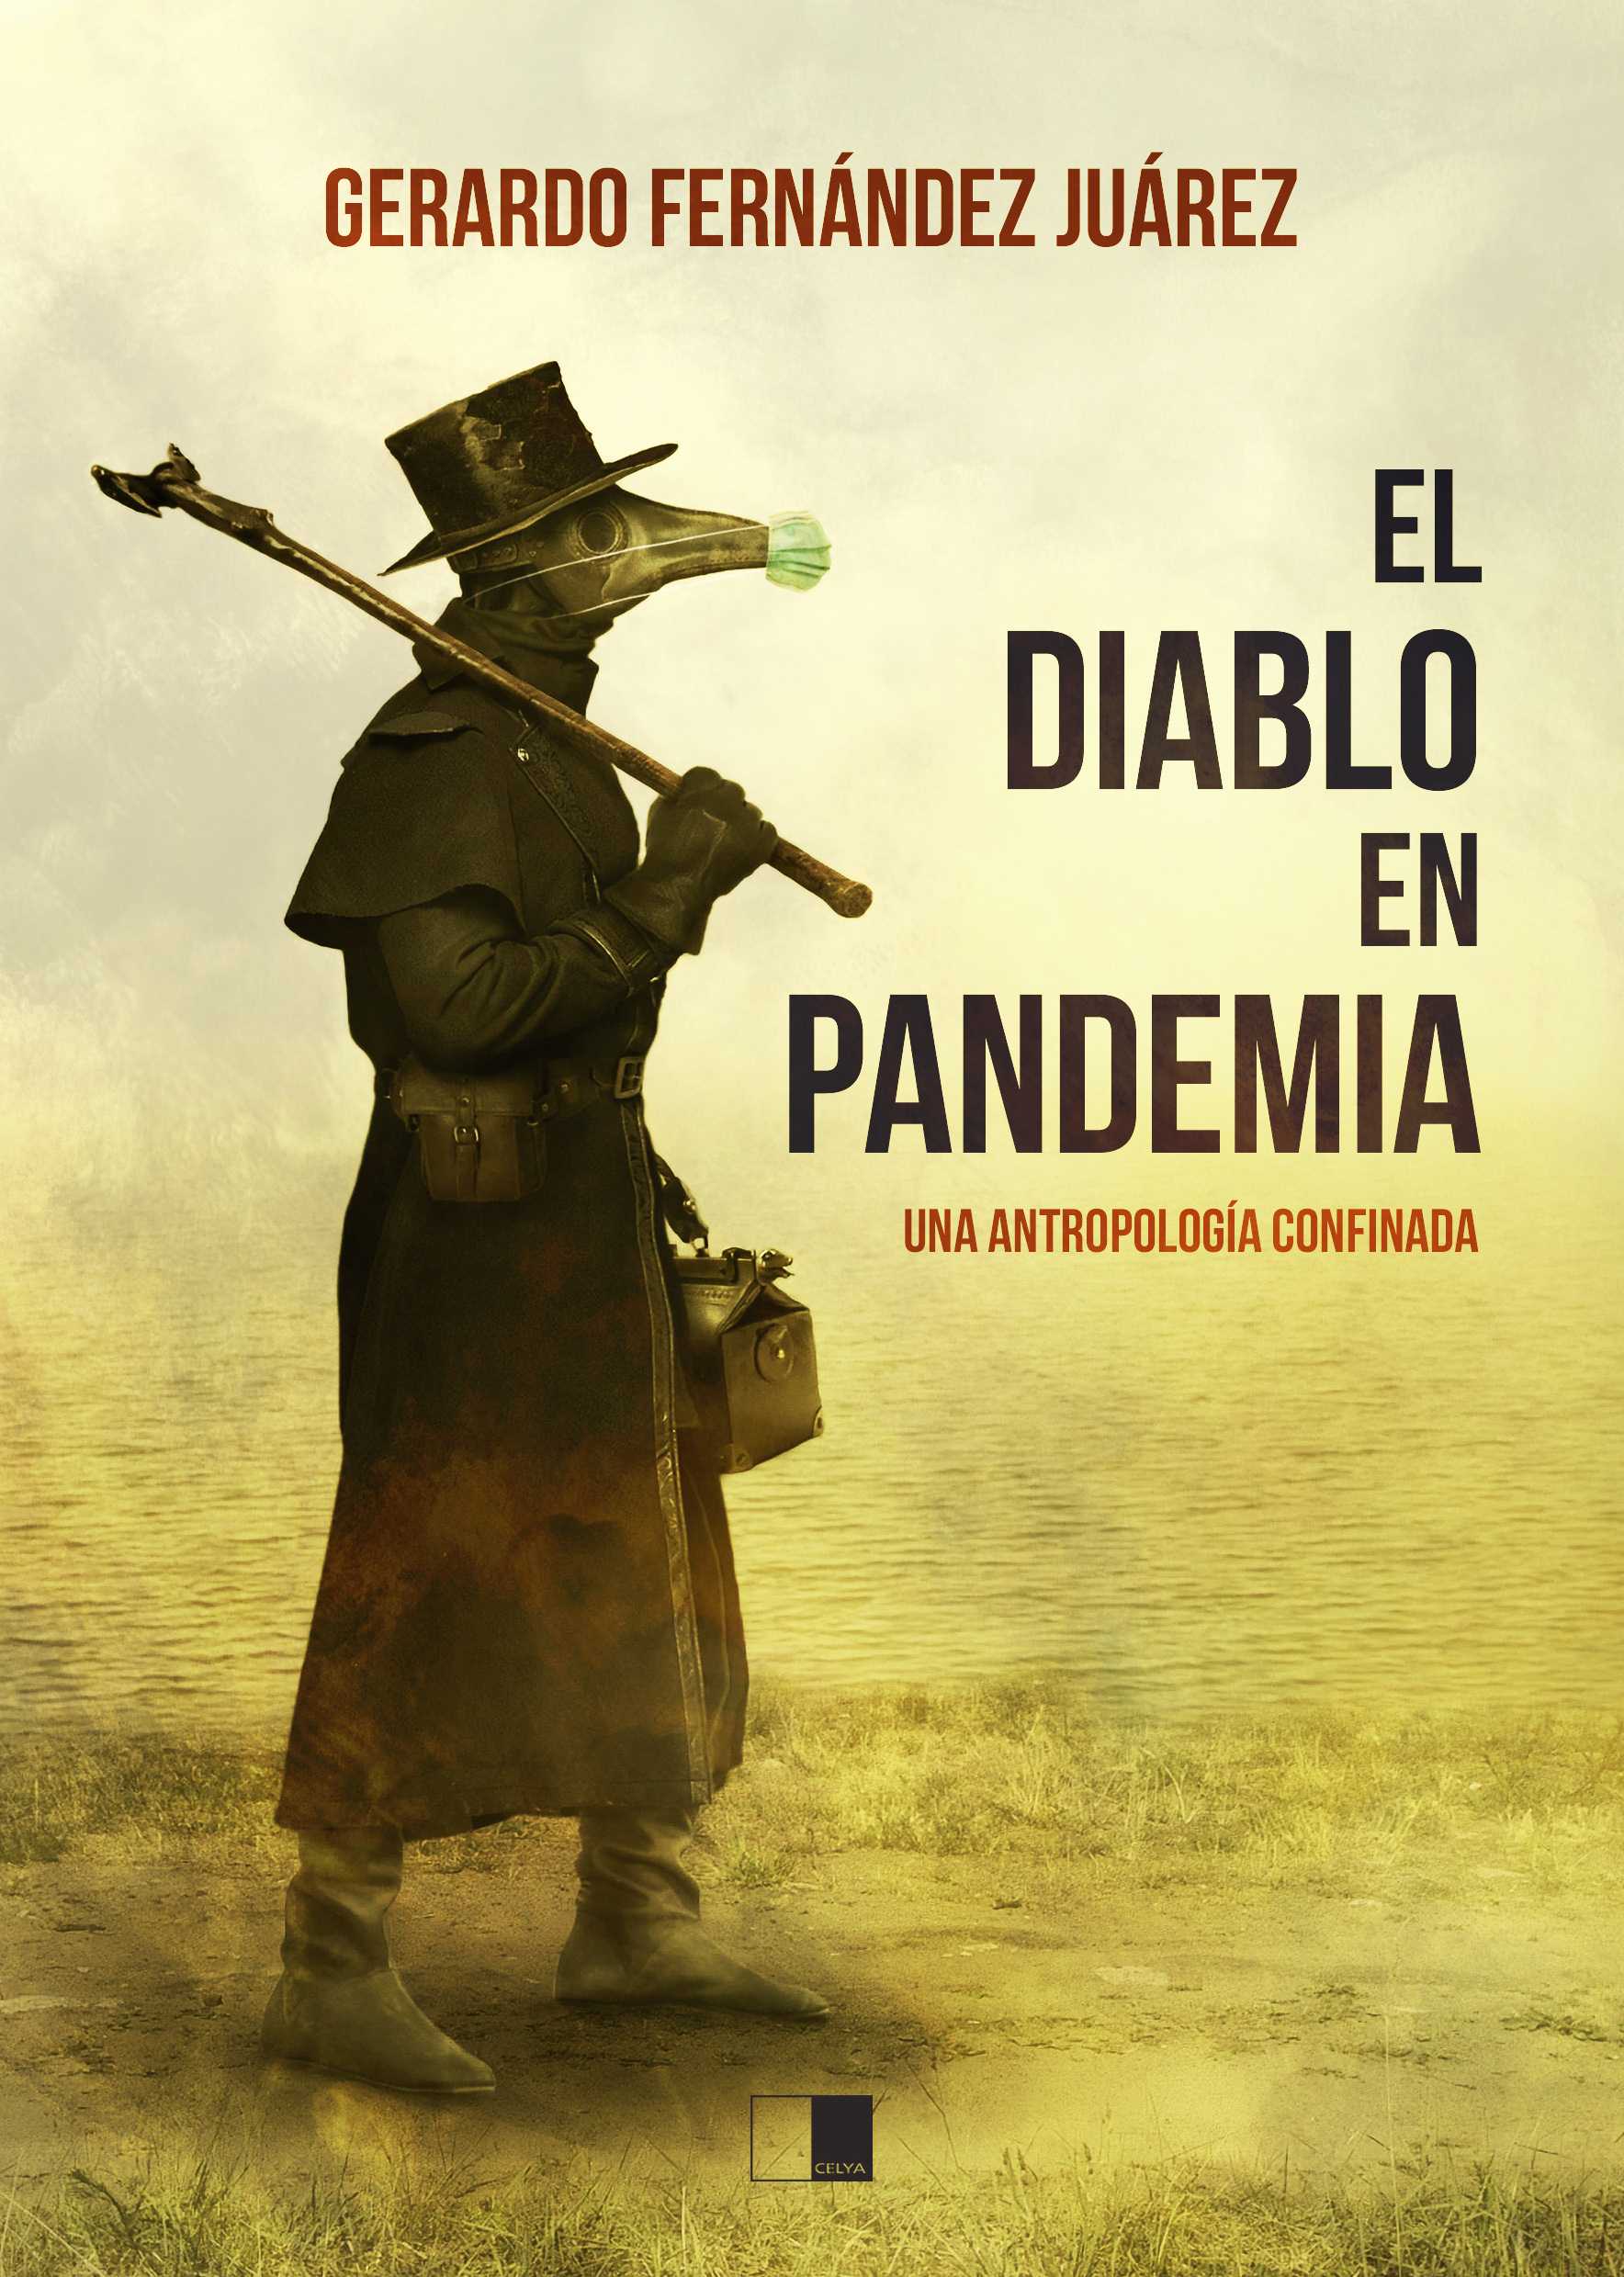 Imagen de portada del libro El diablo en pandemia, una antropología confinada